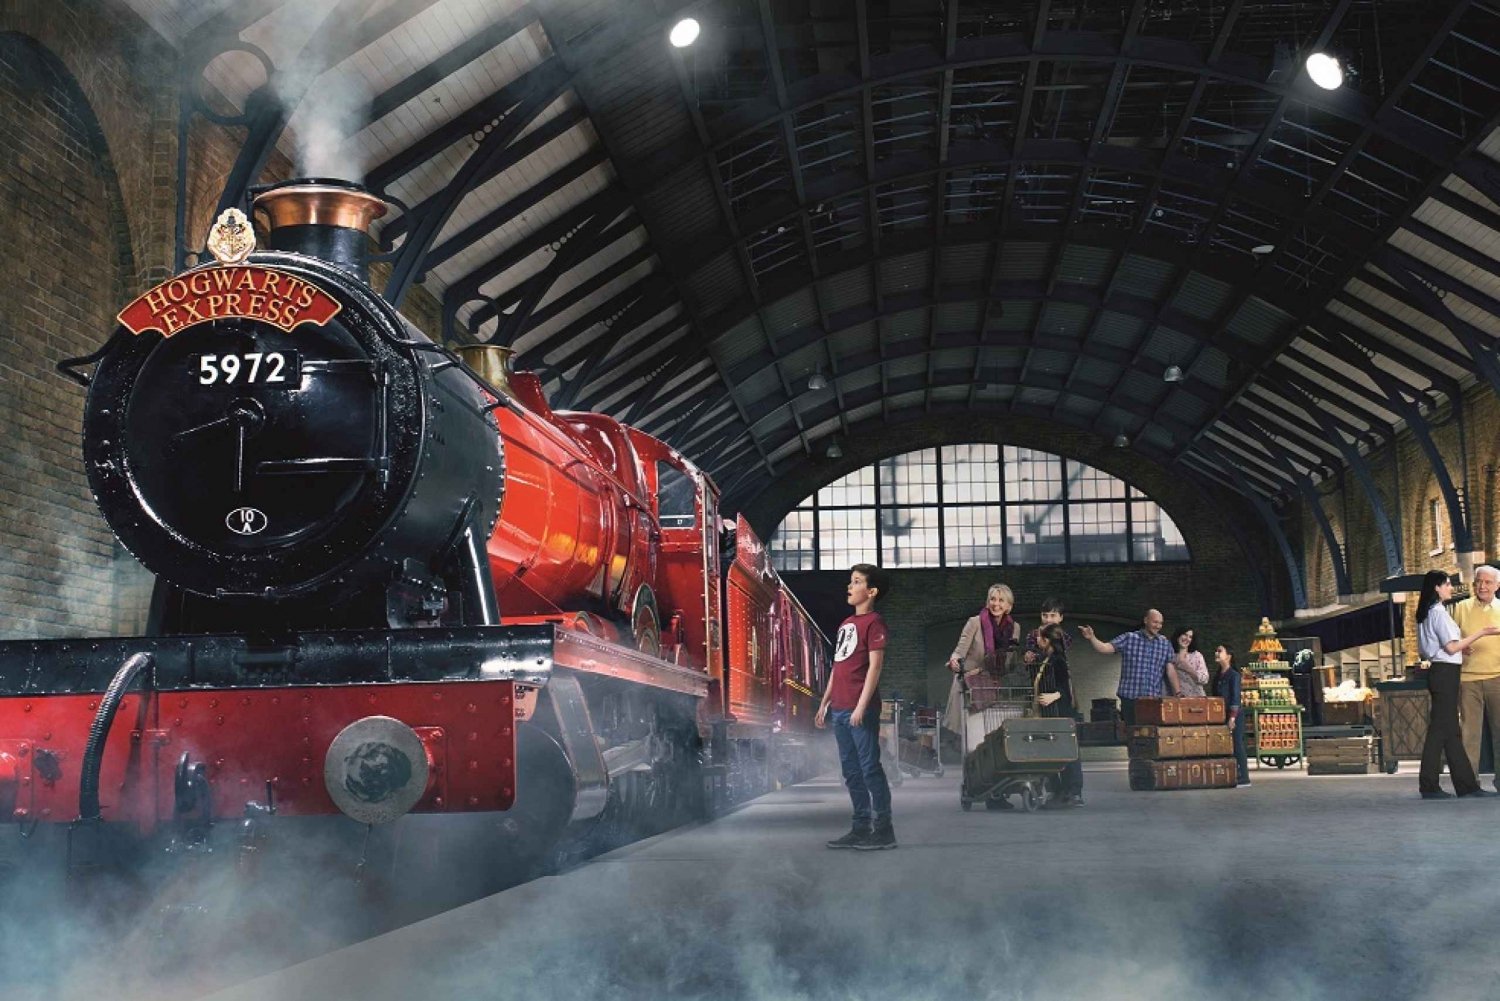 Lontoo: Harry Potter Warner Bros. Tour ja hotellipaketti